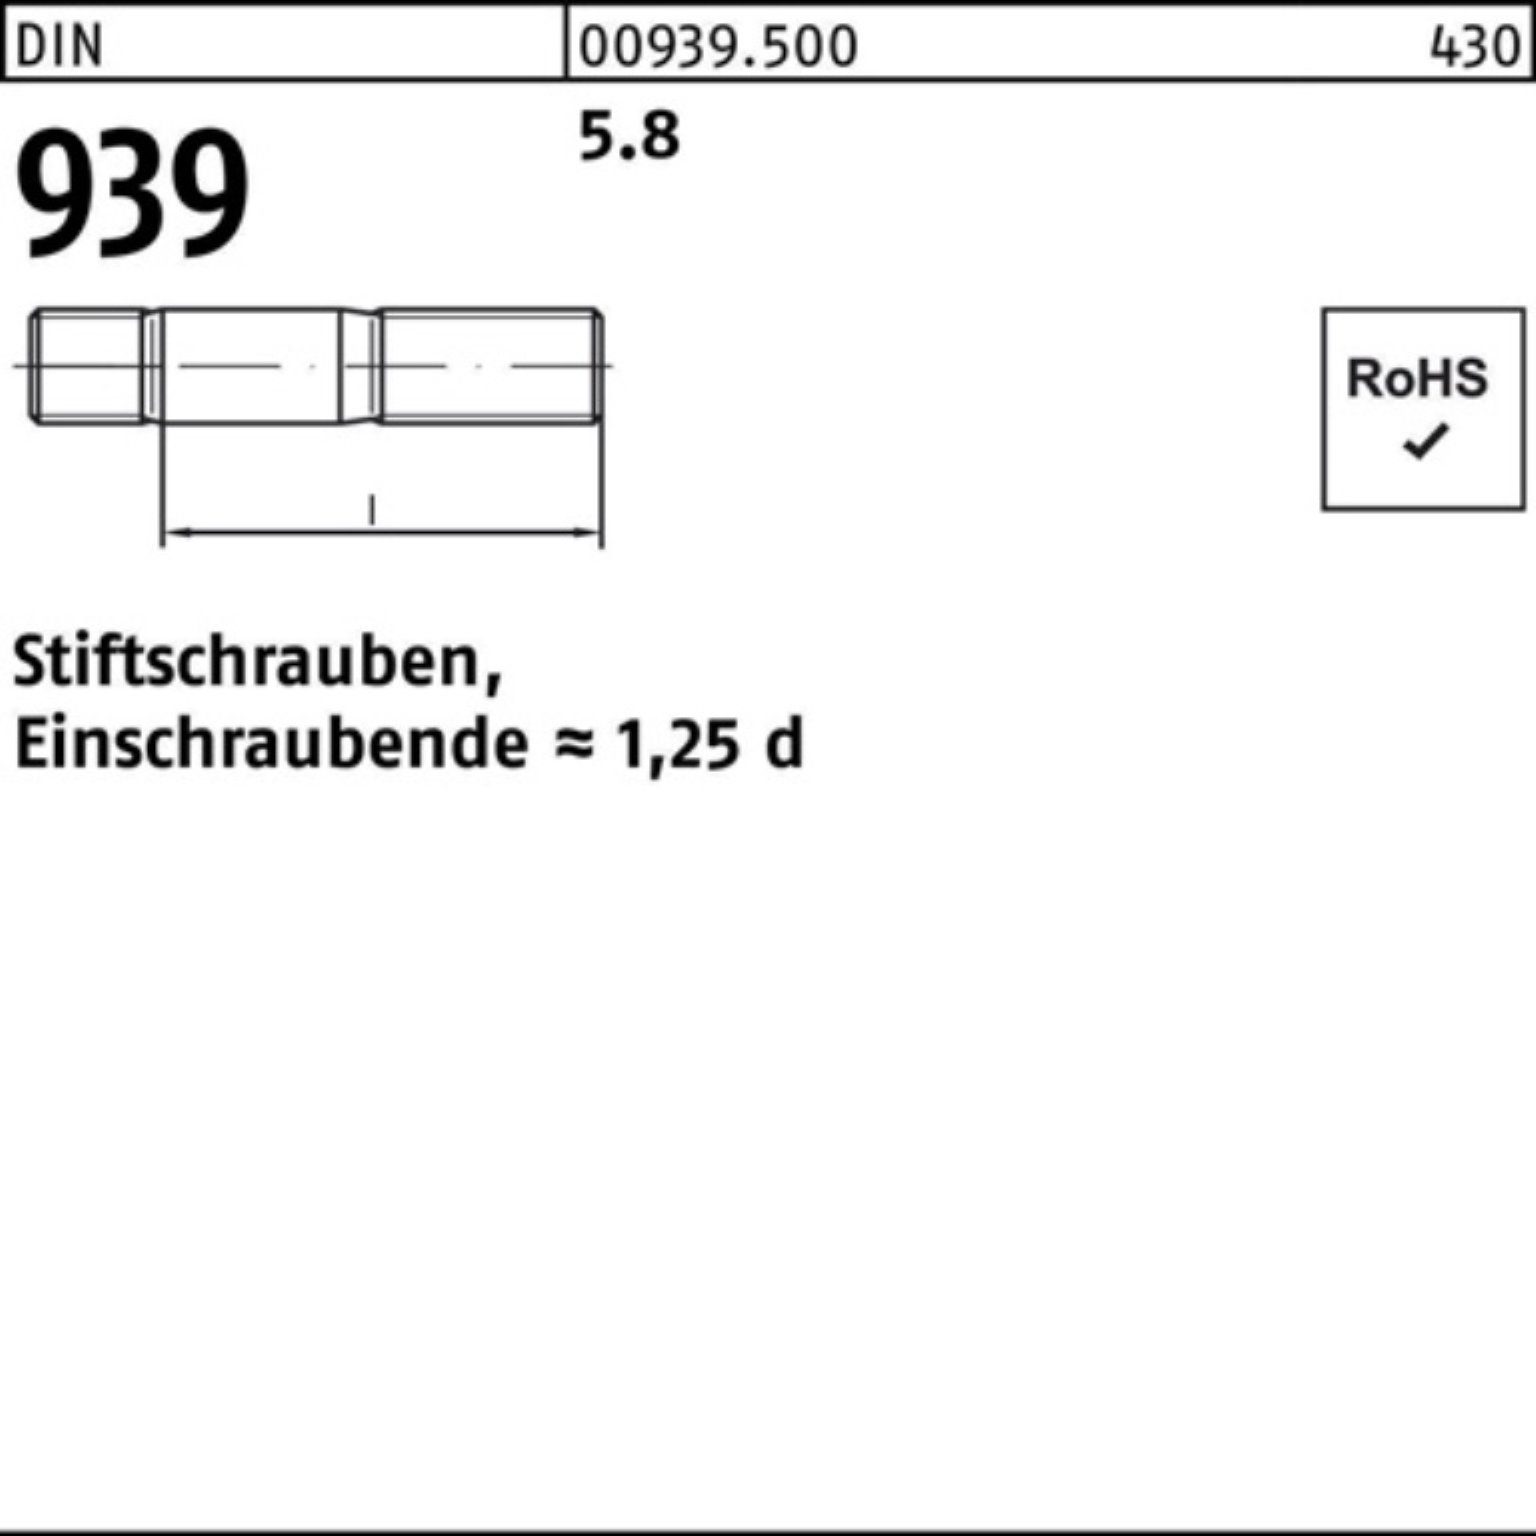 Pack Stiftschraube DIN M8x 80 Reyher S 5.8 939 Stiftschraube 100 100er Einschraubende=1,25d